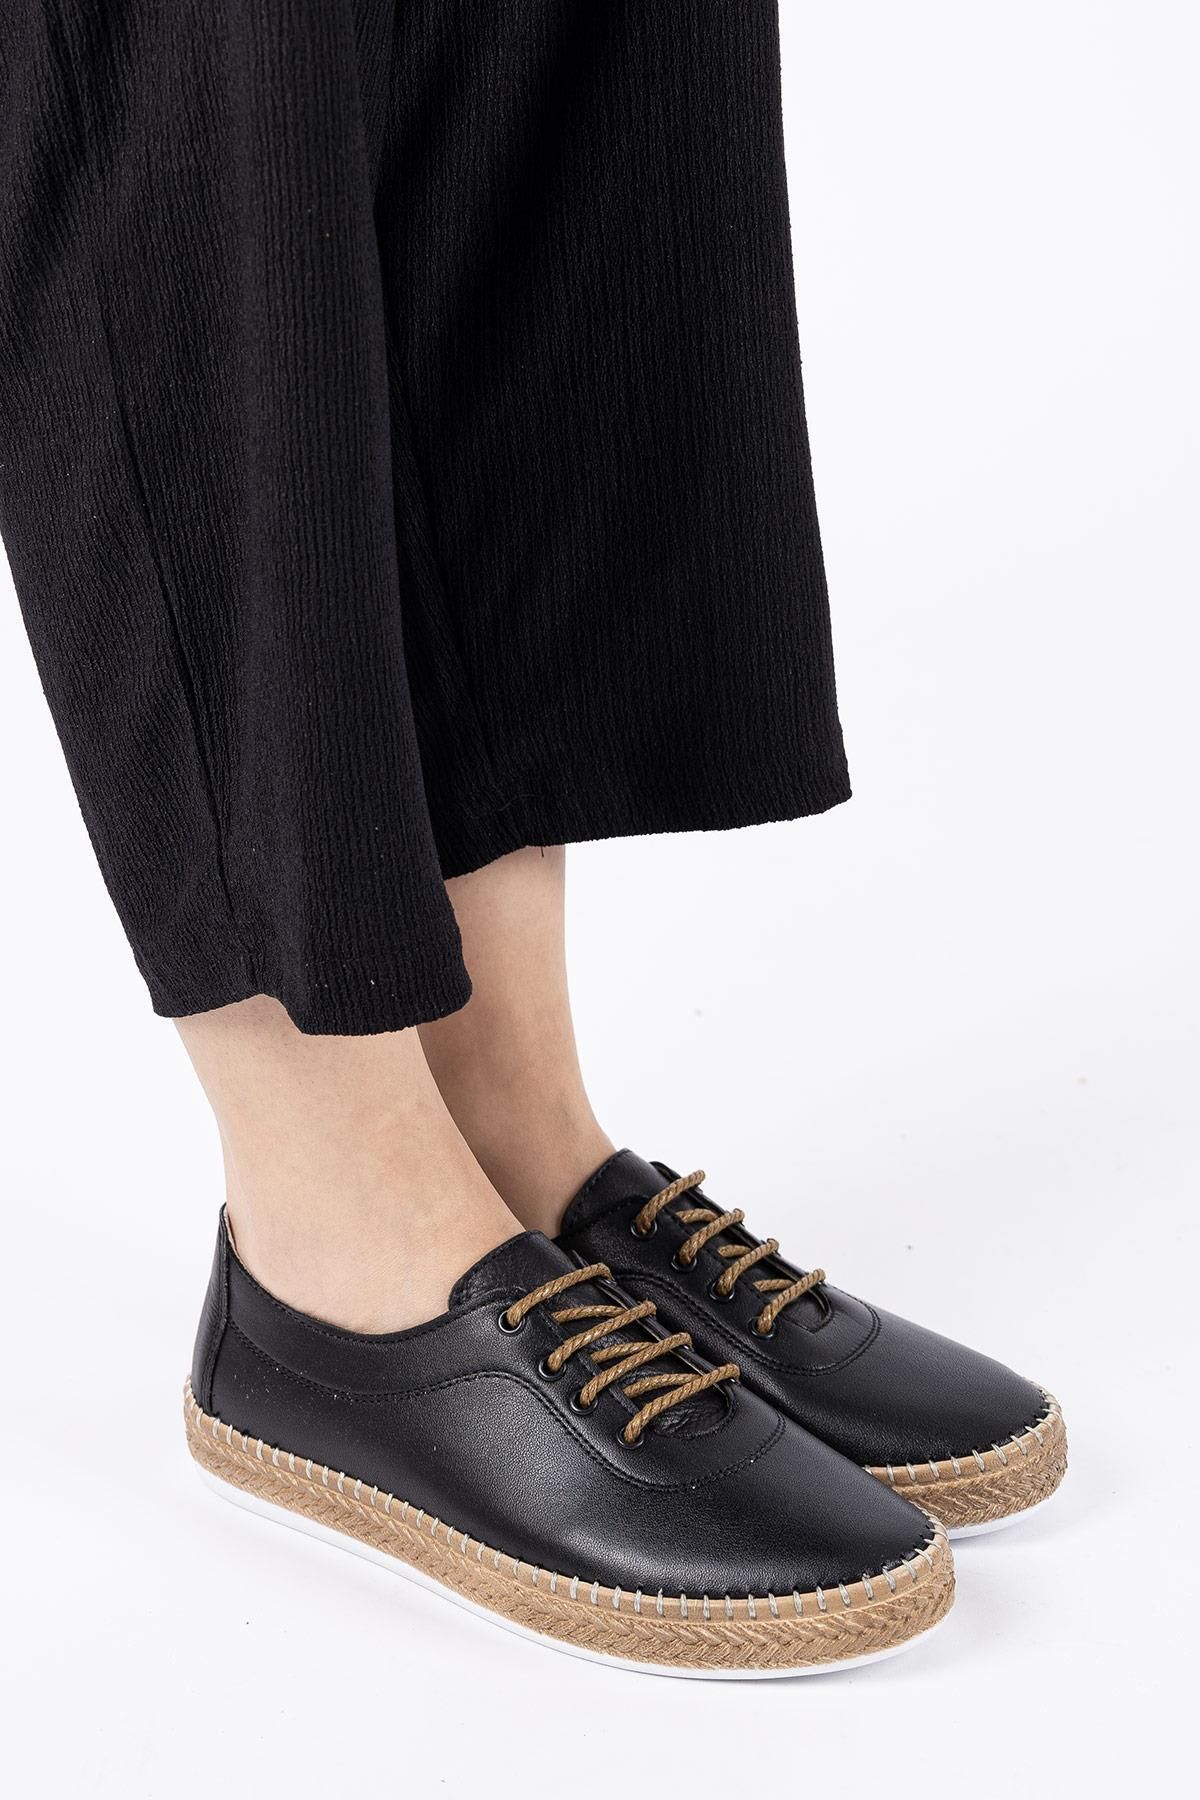 Getcho Lotte Kadın Hakiki Deri Siyah Günlük Ayakkabı